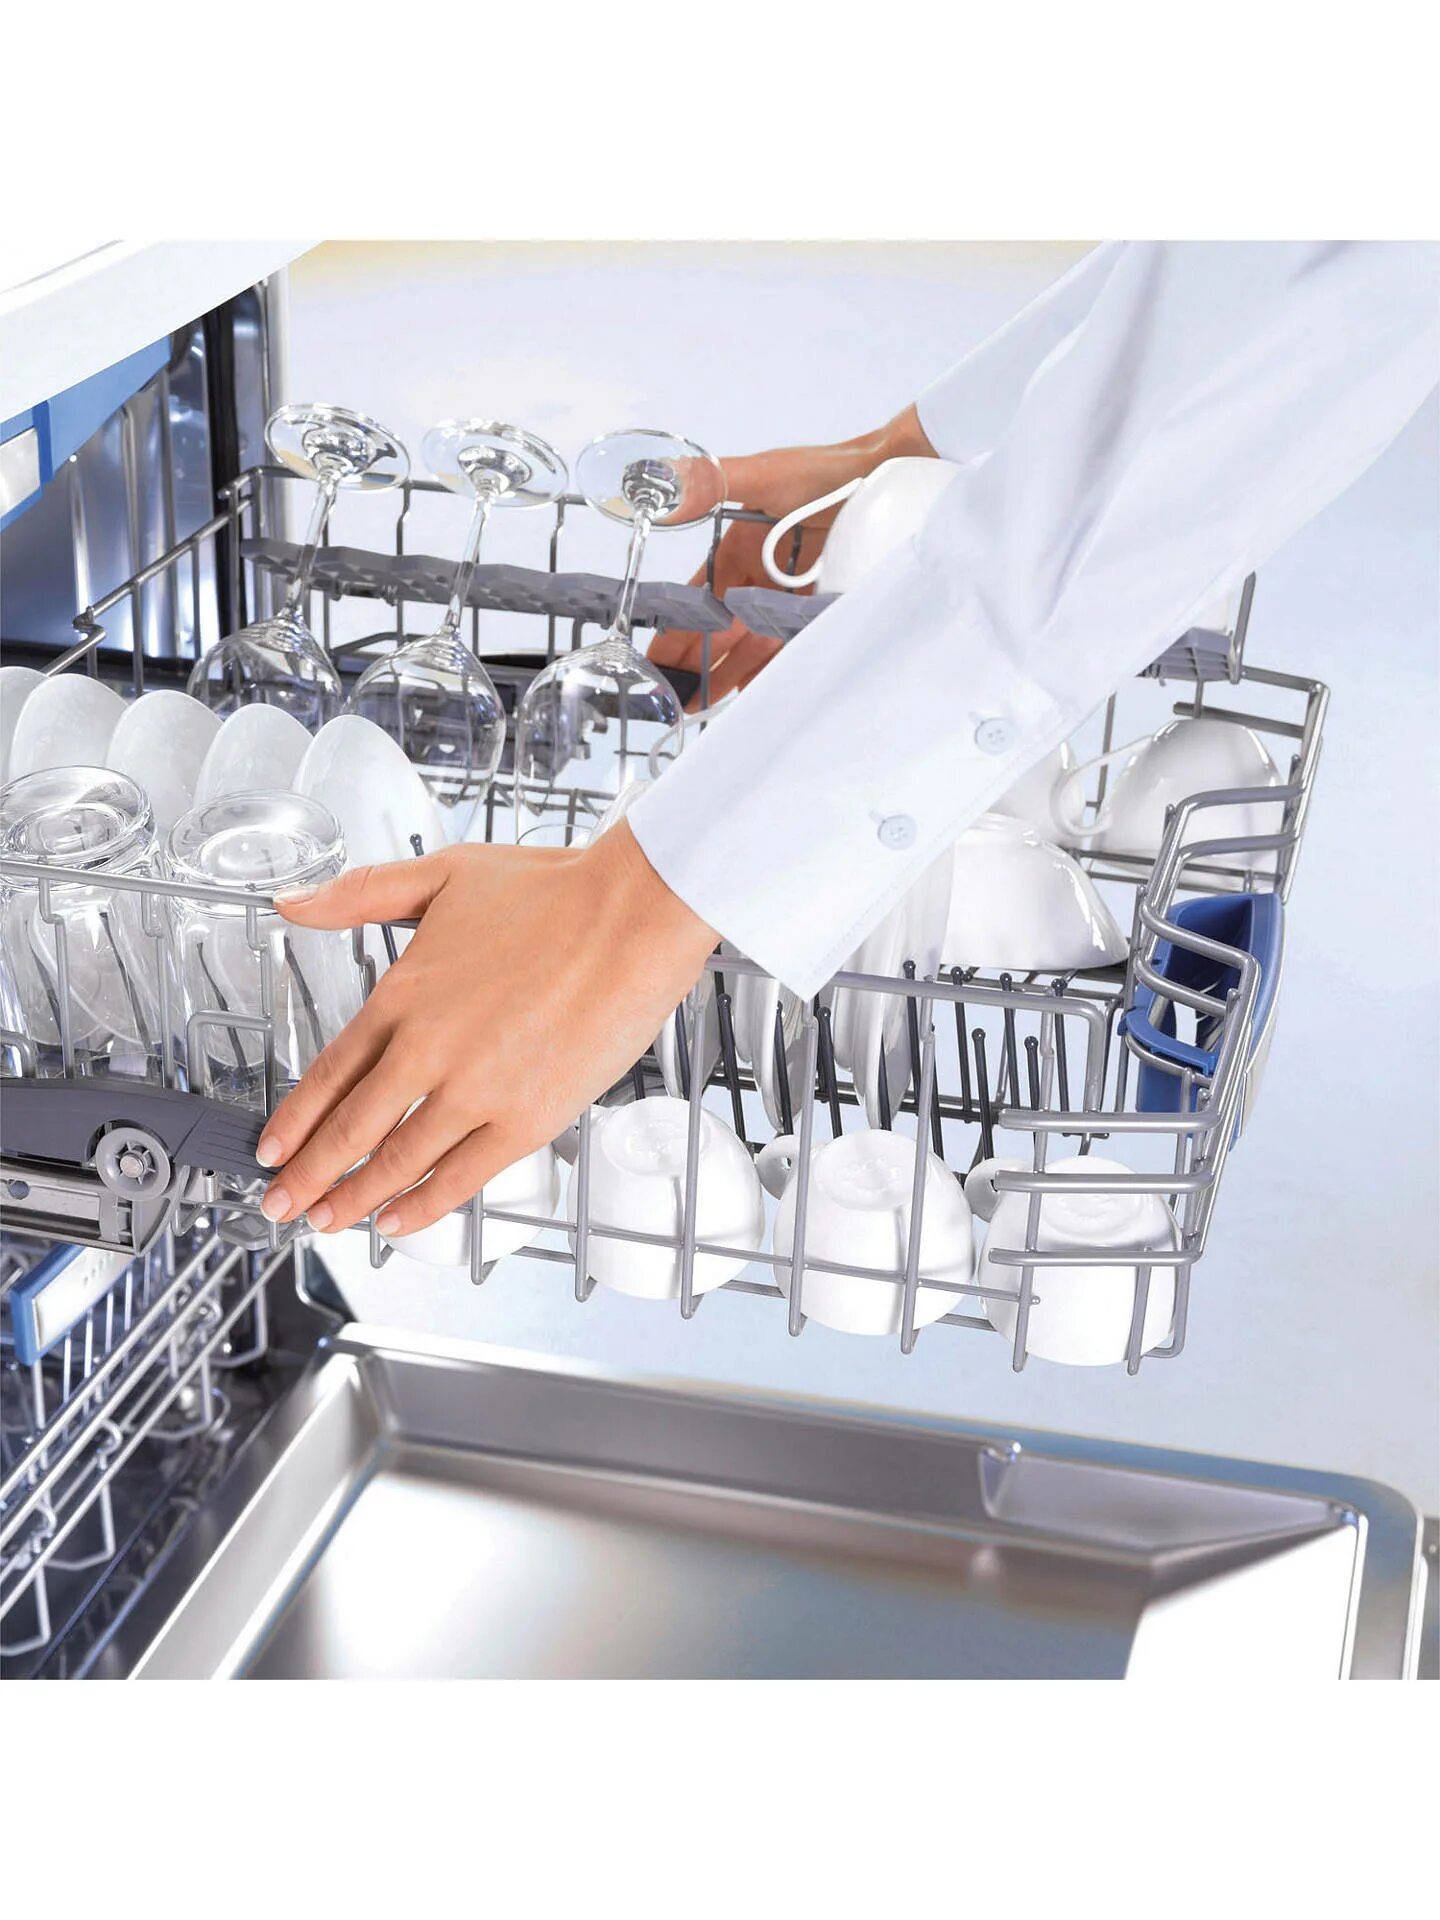 Первое включение посудомоечной машины. Посудомойка Bosch VARIOSPEED. Посудомоечная машина Zanussi ZDS 105 запчасти. Посуда в посудомоечной машине. Посудомоечная машина Zanussi.